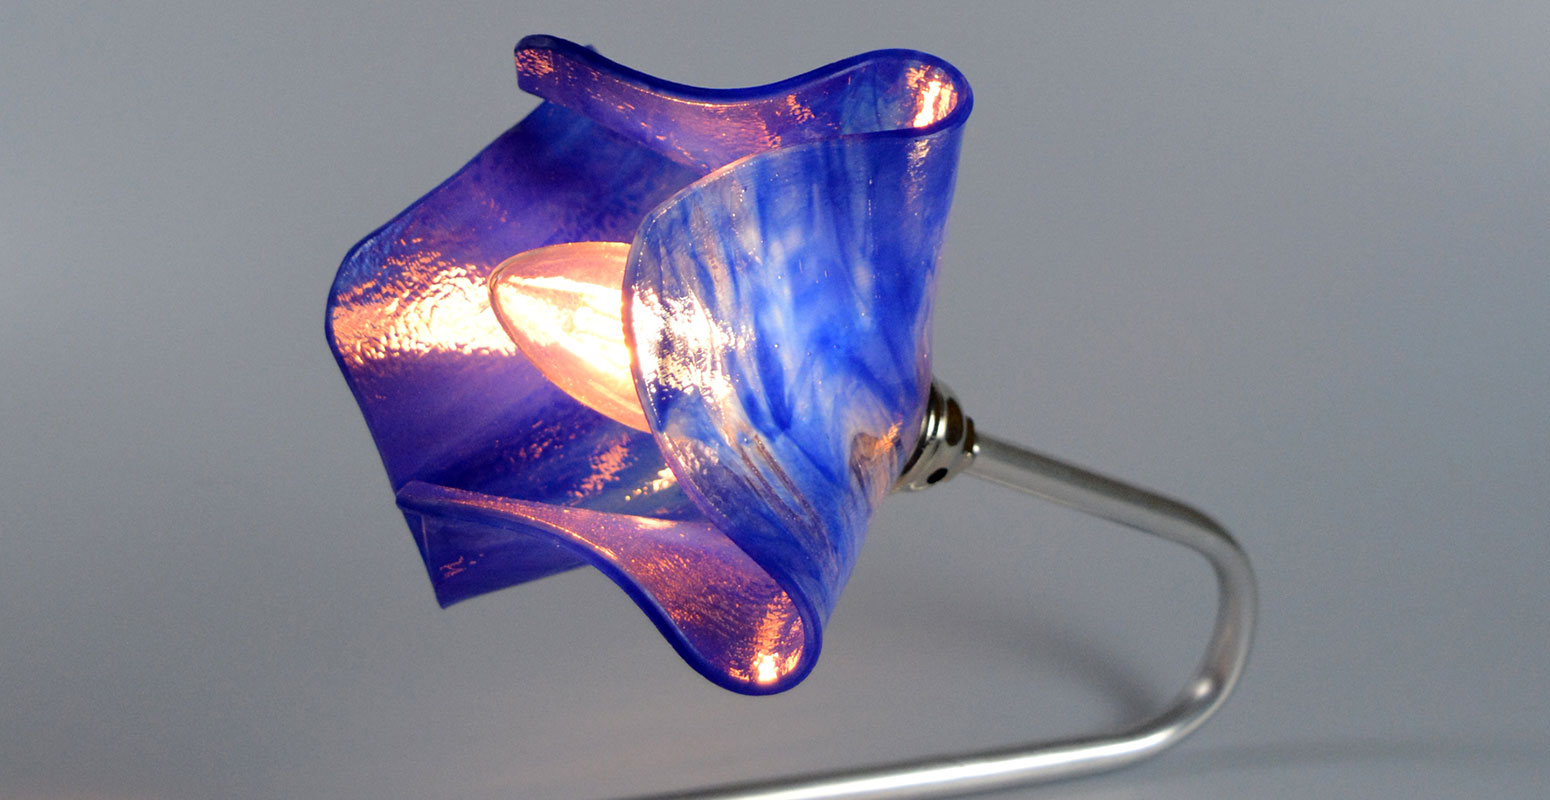 Bolight schöne Lampen für individuelle Akzente LED-Lampen online kaufen